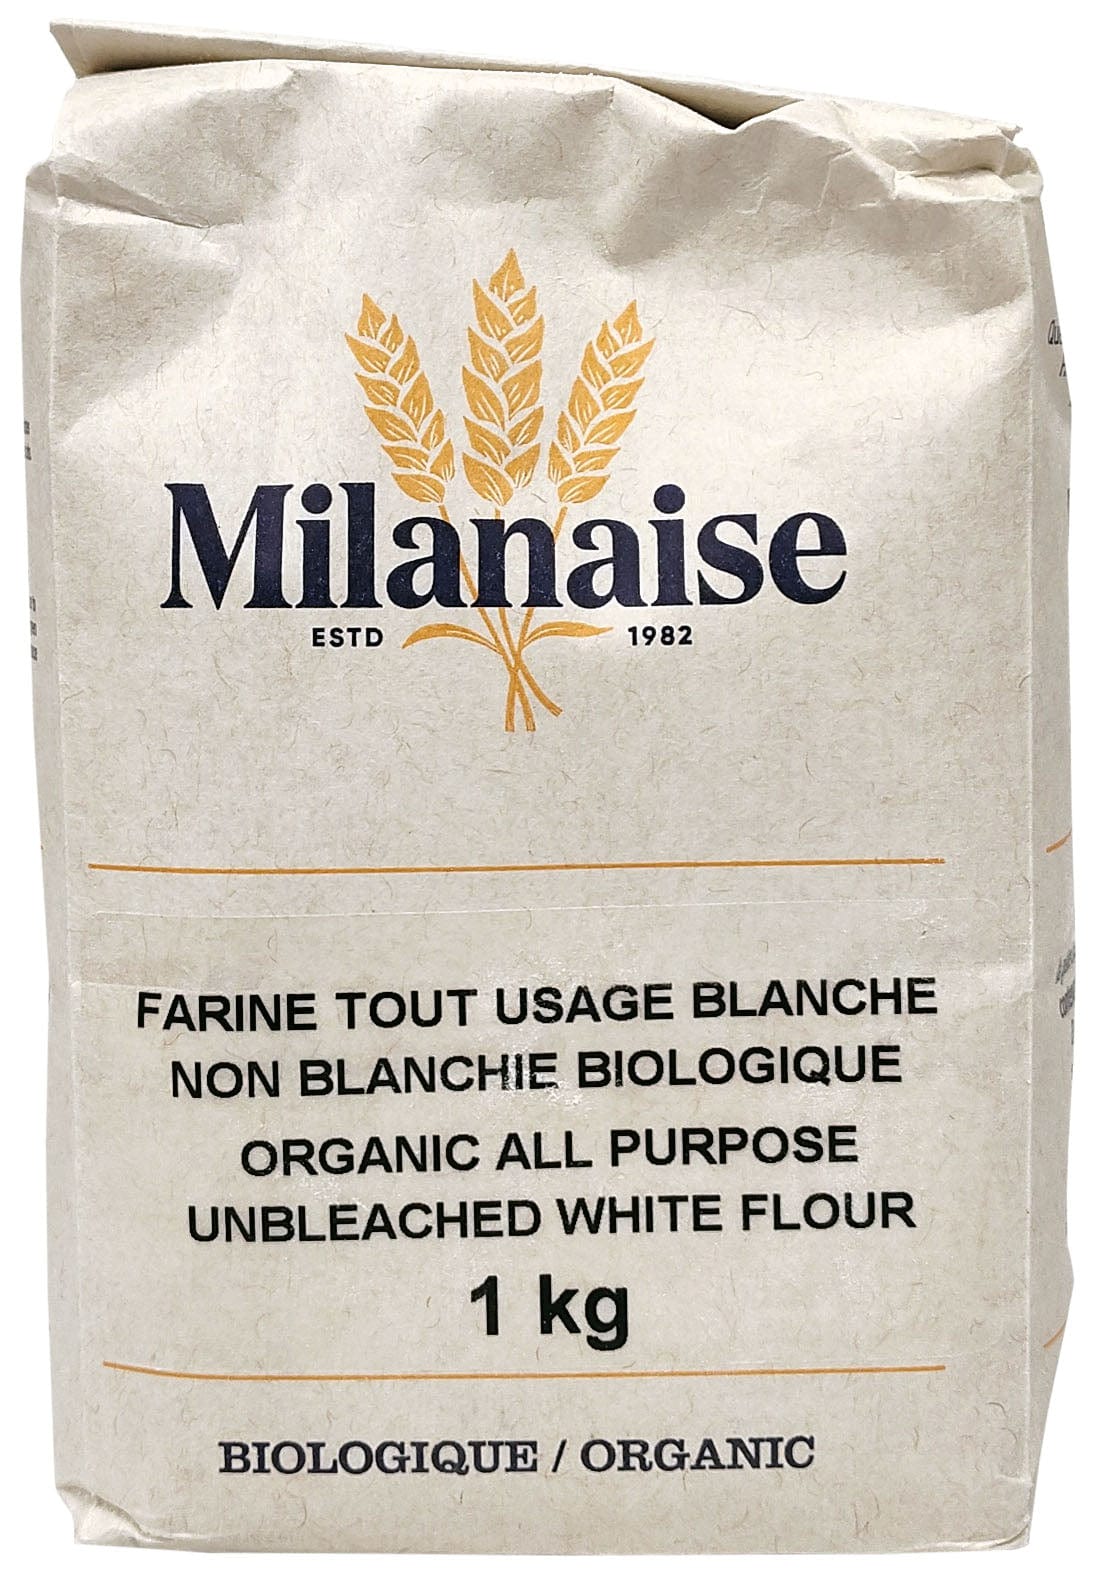 MILANAISE Épicerie Farine tout usage blanche non blanchie biologique 1kg